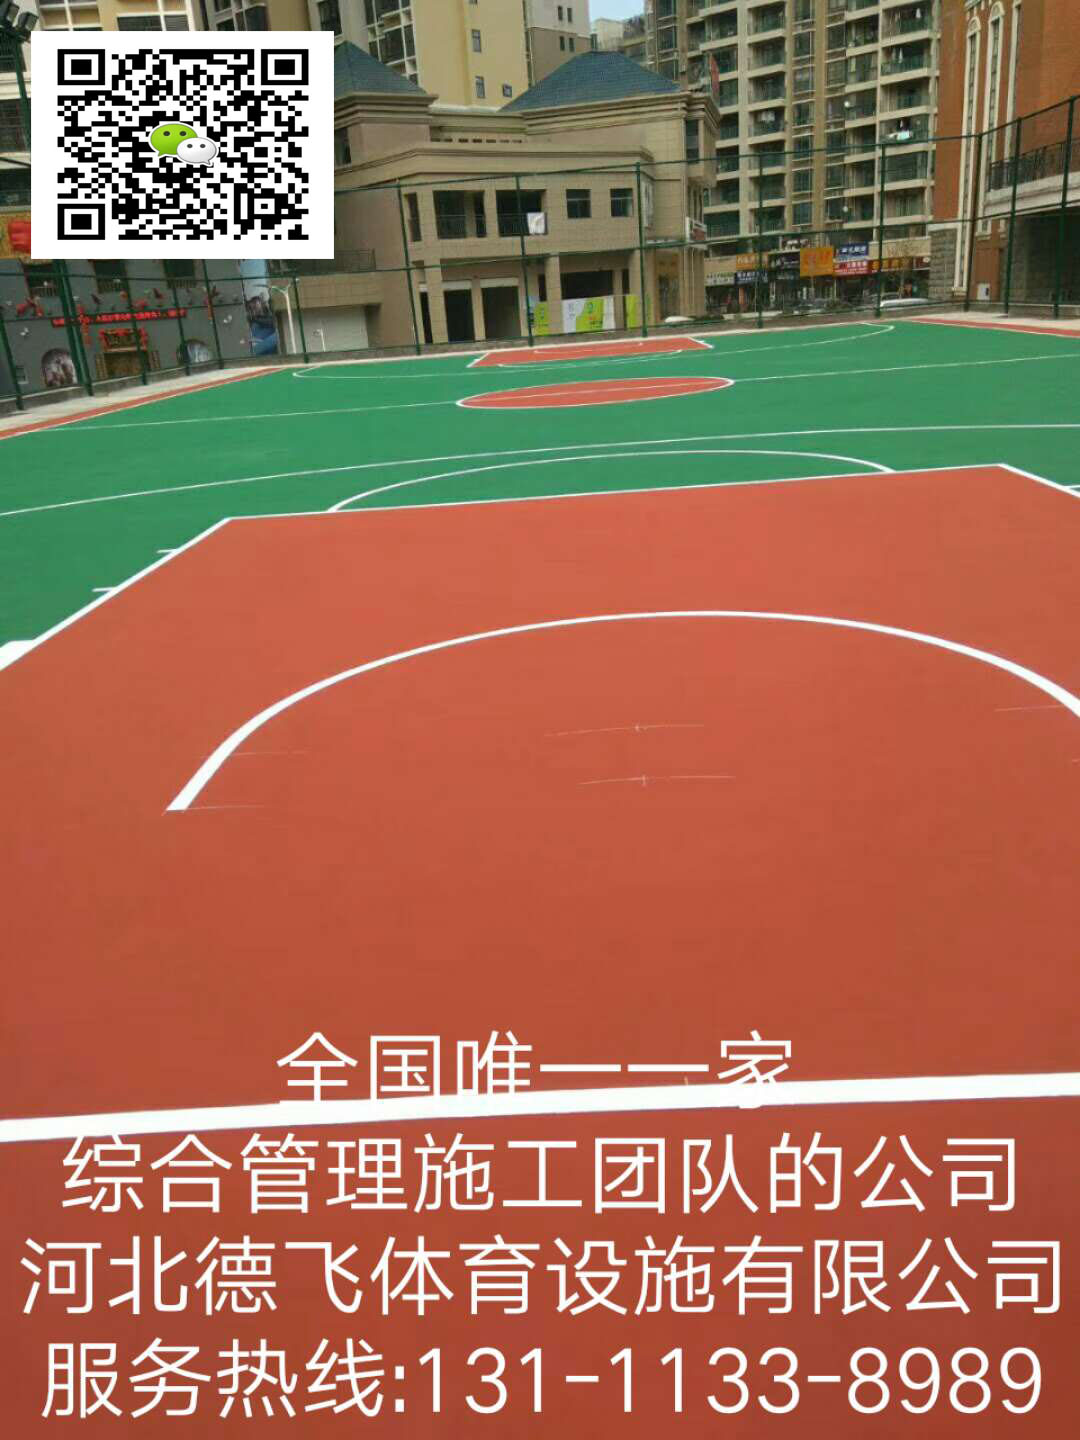 滁州丙烯酸塑胶篮球场建设协会欢迎光临｜有限公司欢迎您